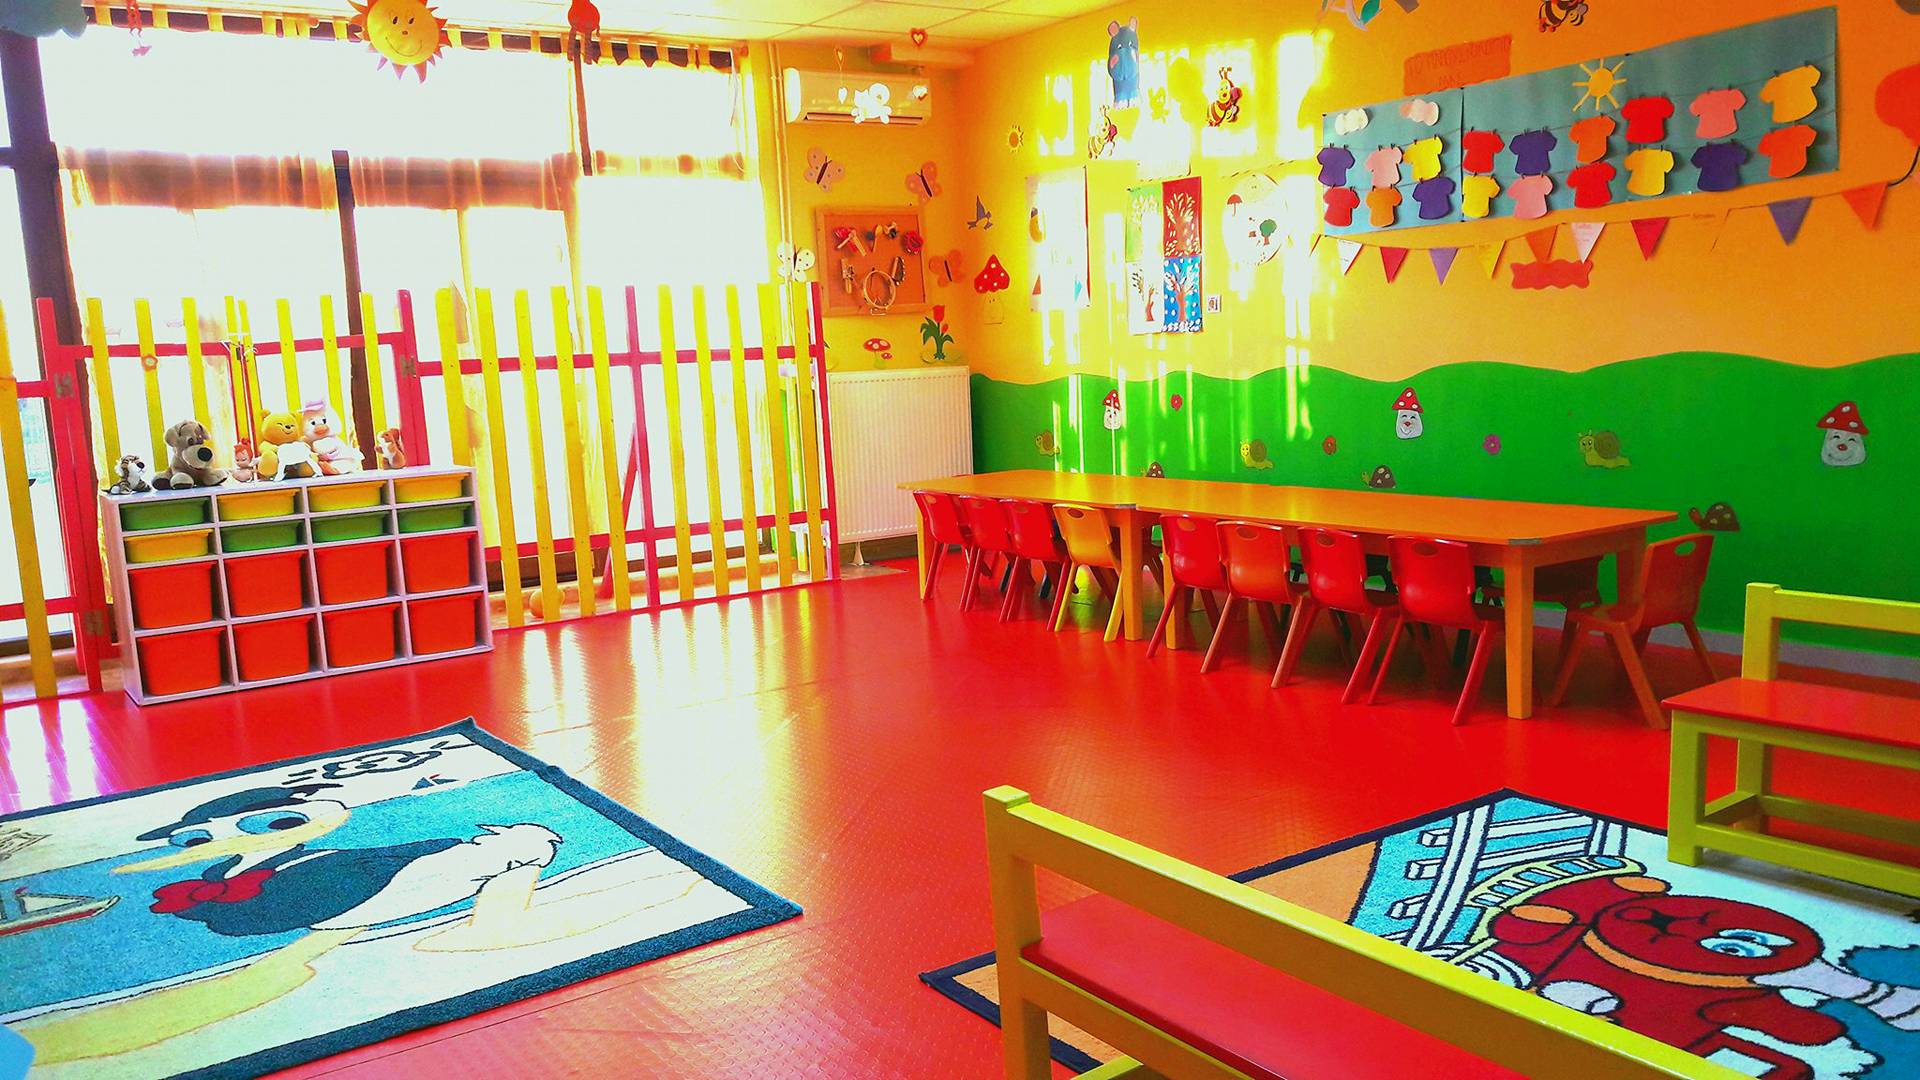 Λάρισα: Ξεκίνησαν οι ενστάσεις για τα voucher στους παιδικούς σταθμούς 